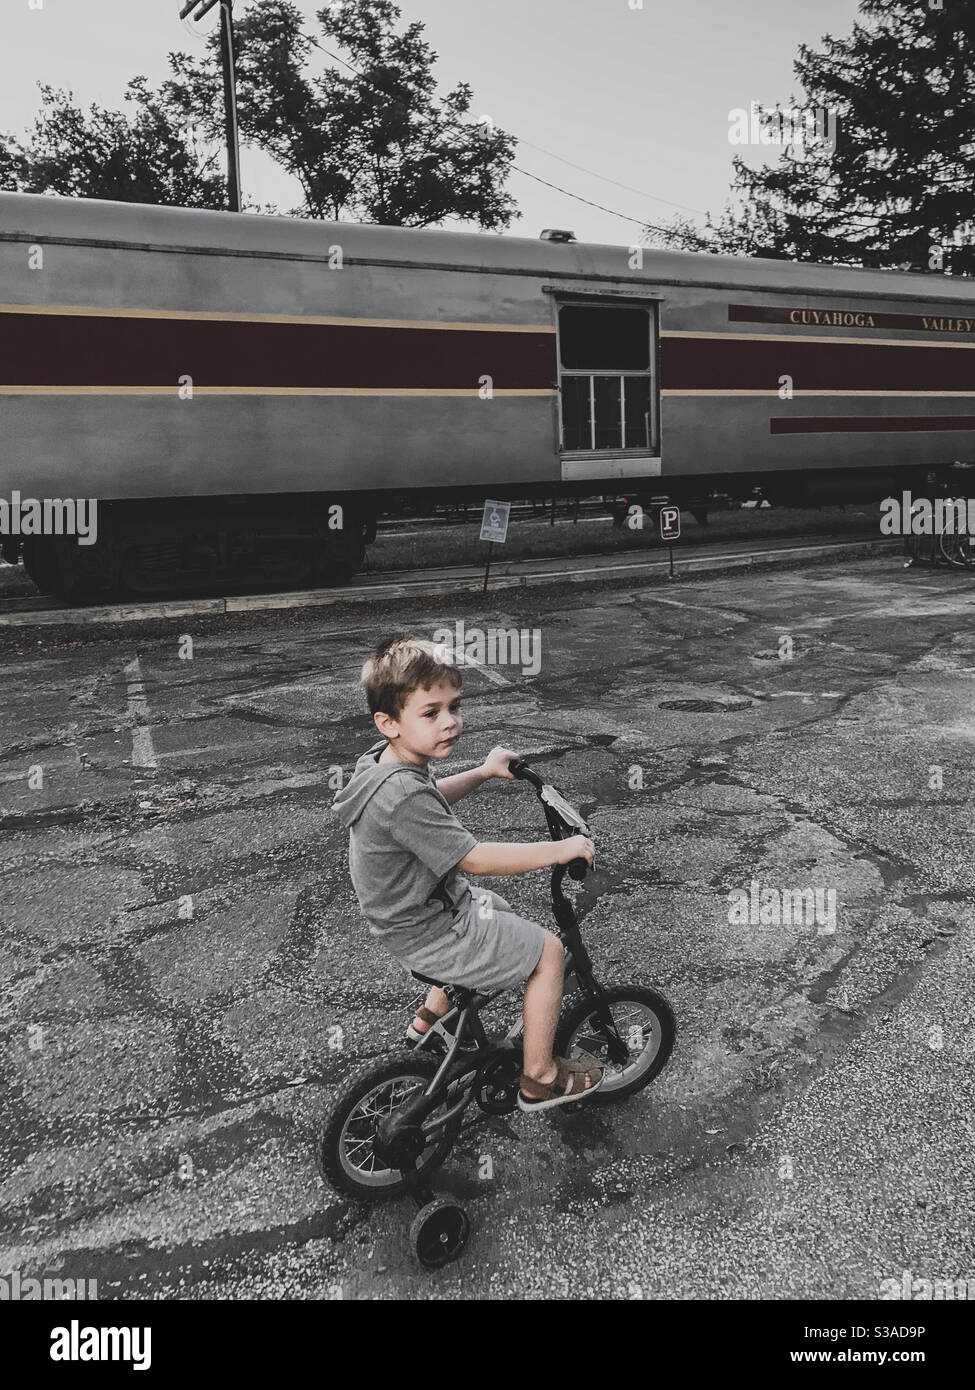 Junge, der sein Fahrrad durch einen verlassenen Zug fährt Stockfoto